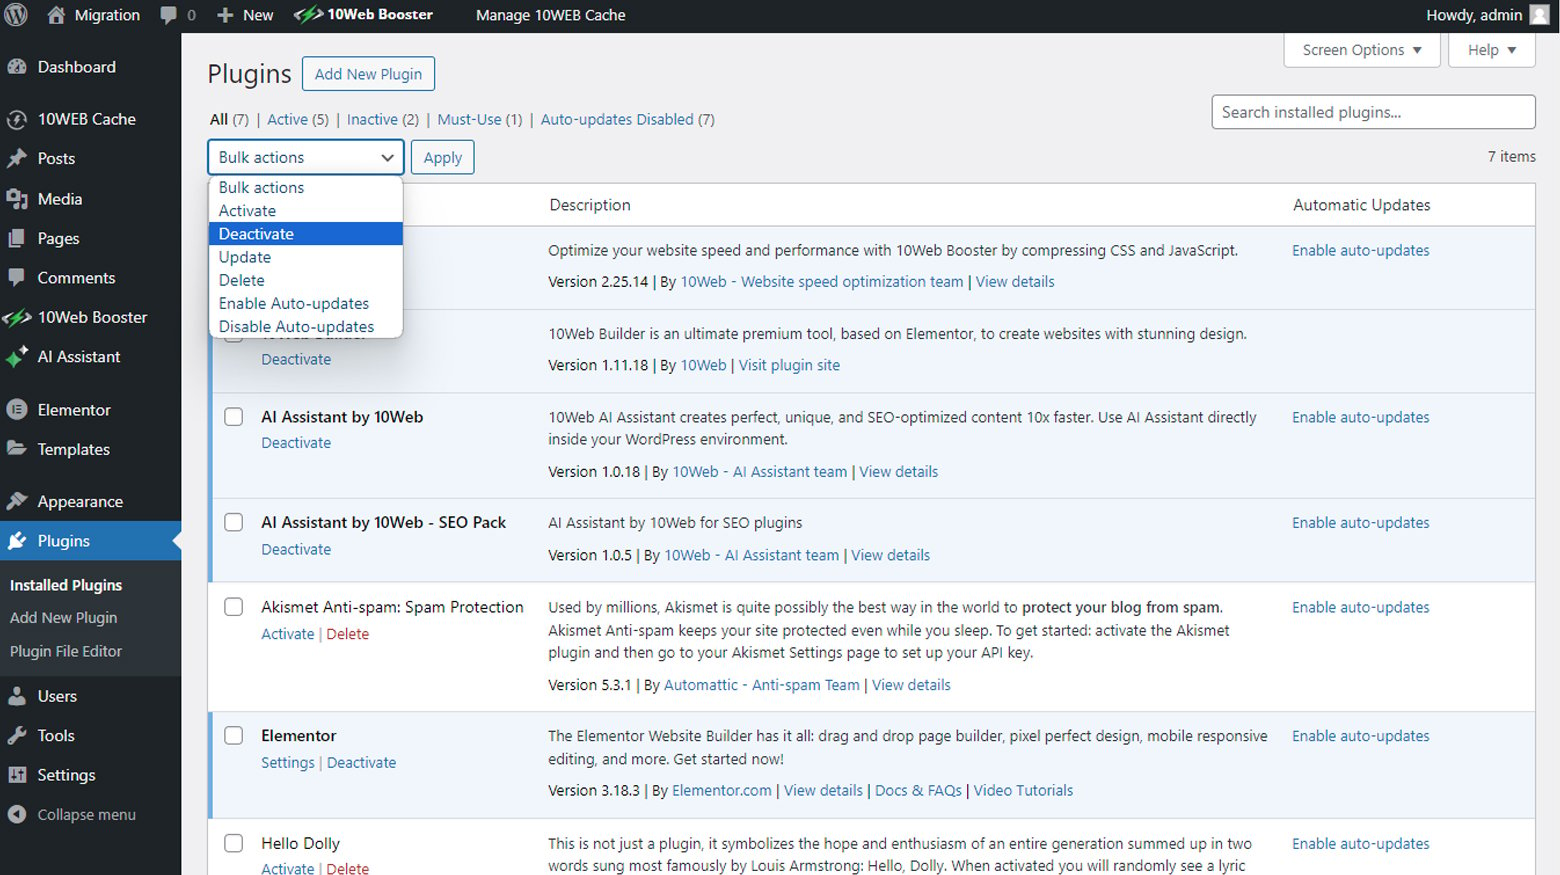 صفحة المكونات الإضافية للوحة تحكم مسؤول WordPress مع تحديد الإجراء المجمع لإلغاء التنشيط.